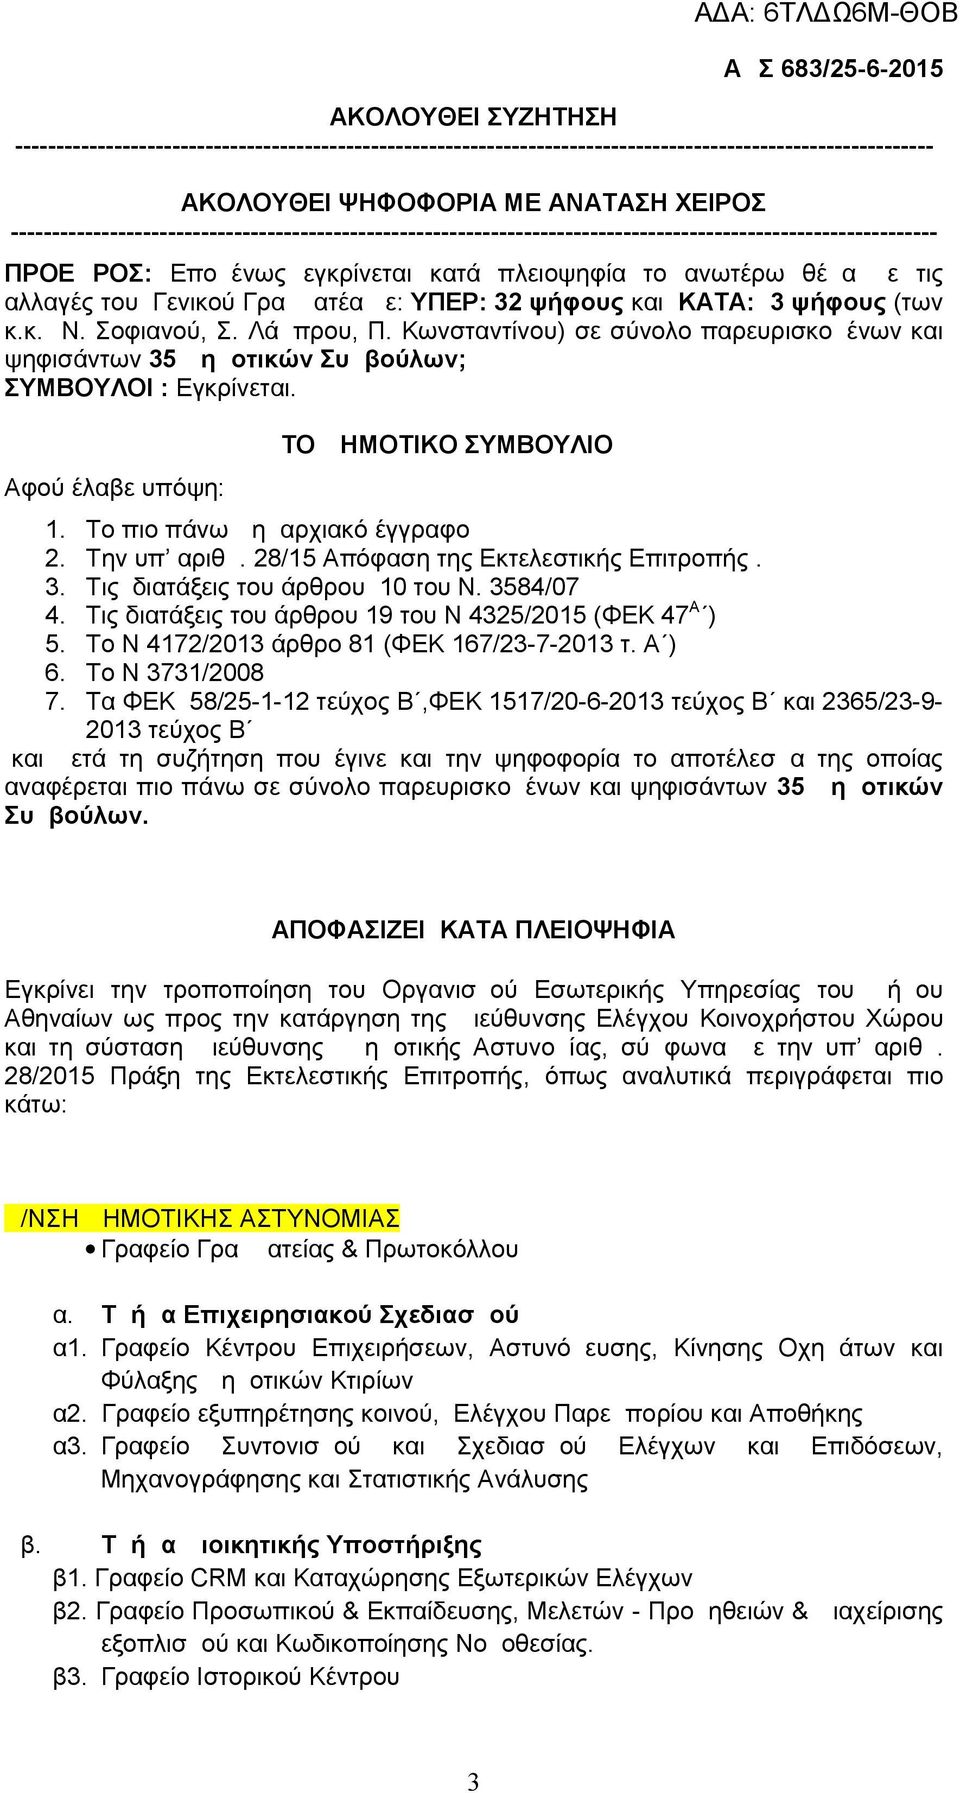 Γενικού Γραμματέα με: ΥΠΕΡ: 32 ψήφους και ΚΑΤΑ: 3 ψήφους (των κ.κ. Ν. Σοφιανού, Σ. Λάμπρου, Π. Κωνσταντίνου) σε σύνολο παρευρισκομένων και ψηφισάντων 35 Δημοτικών Συμβούλων; ΣΥΜΒΟΥΛΟΙ : Εγκρίνεται.